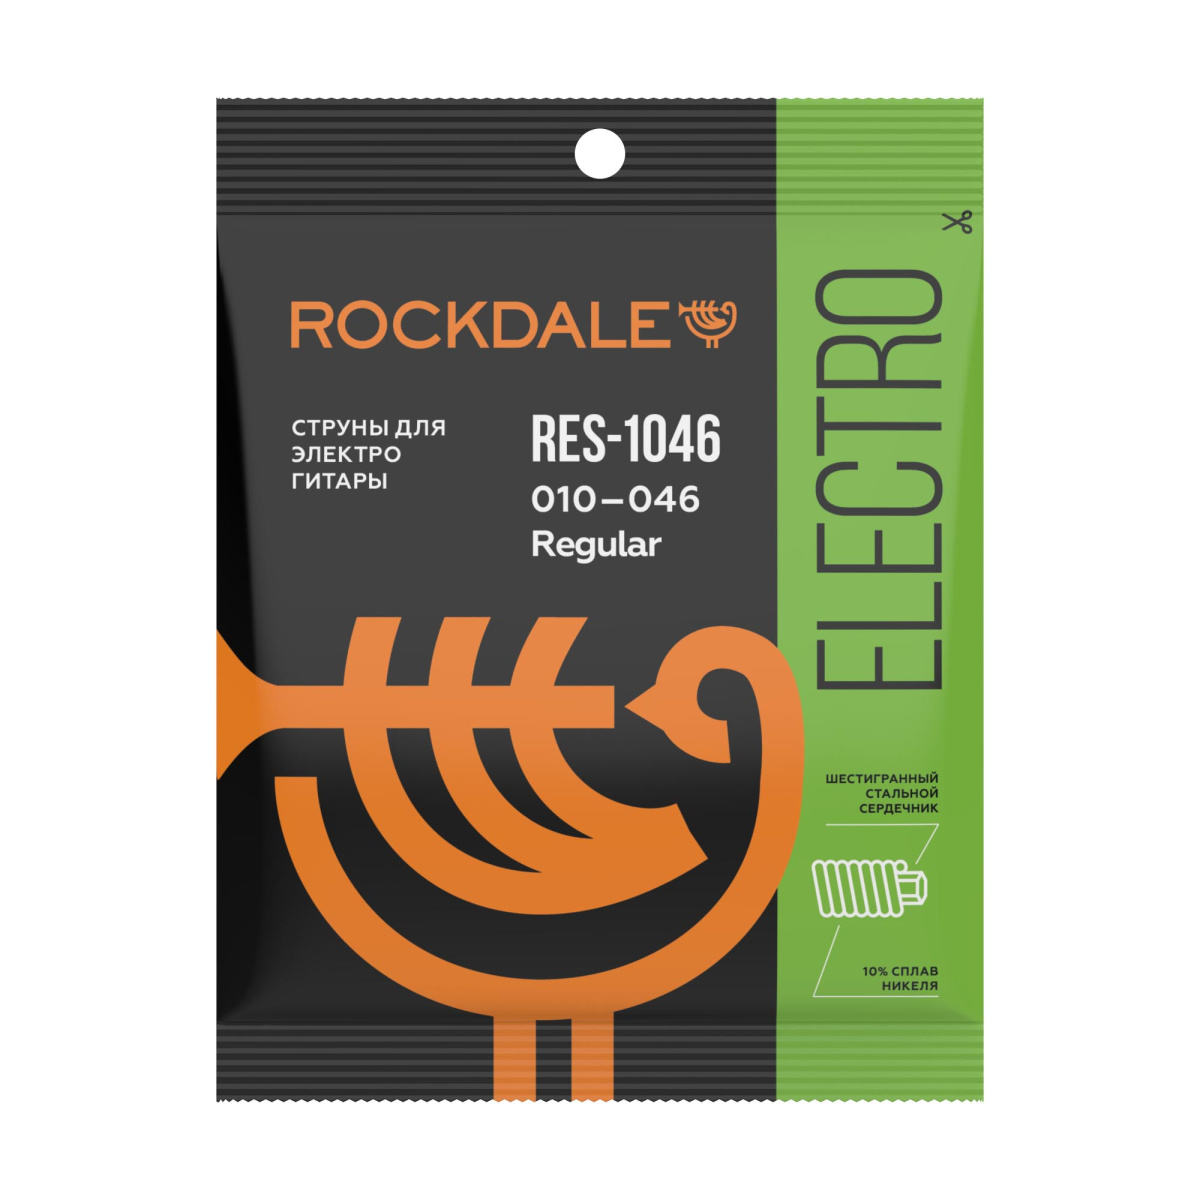 ROCKDALE RES-1046 Струны для электрогитары с шестигранным сердечником и никелевым покрытием. Цветная купить в prostore.me